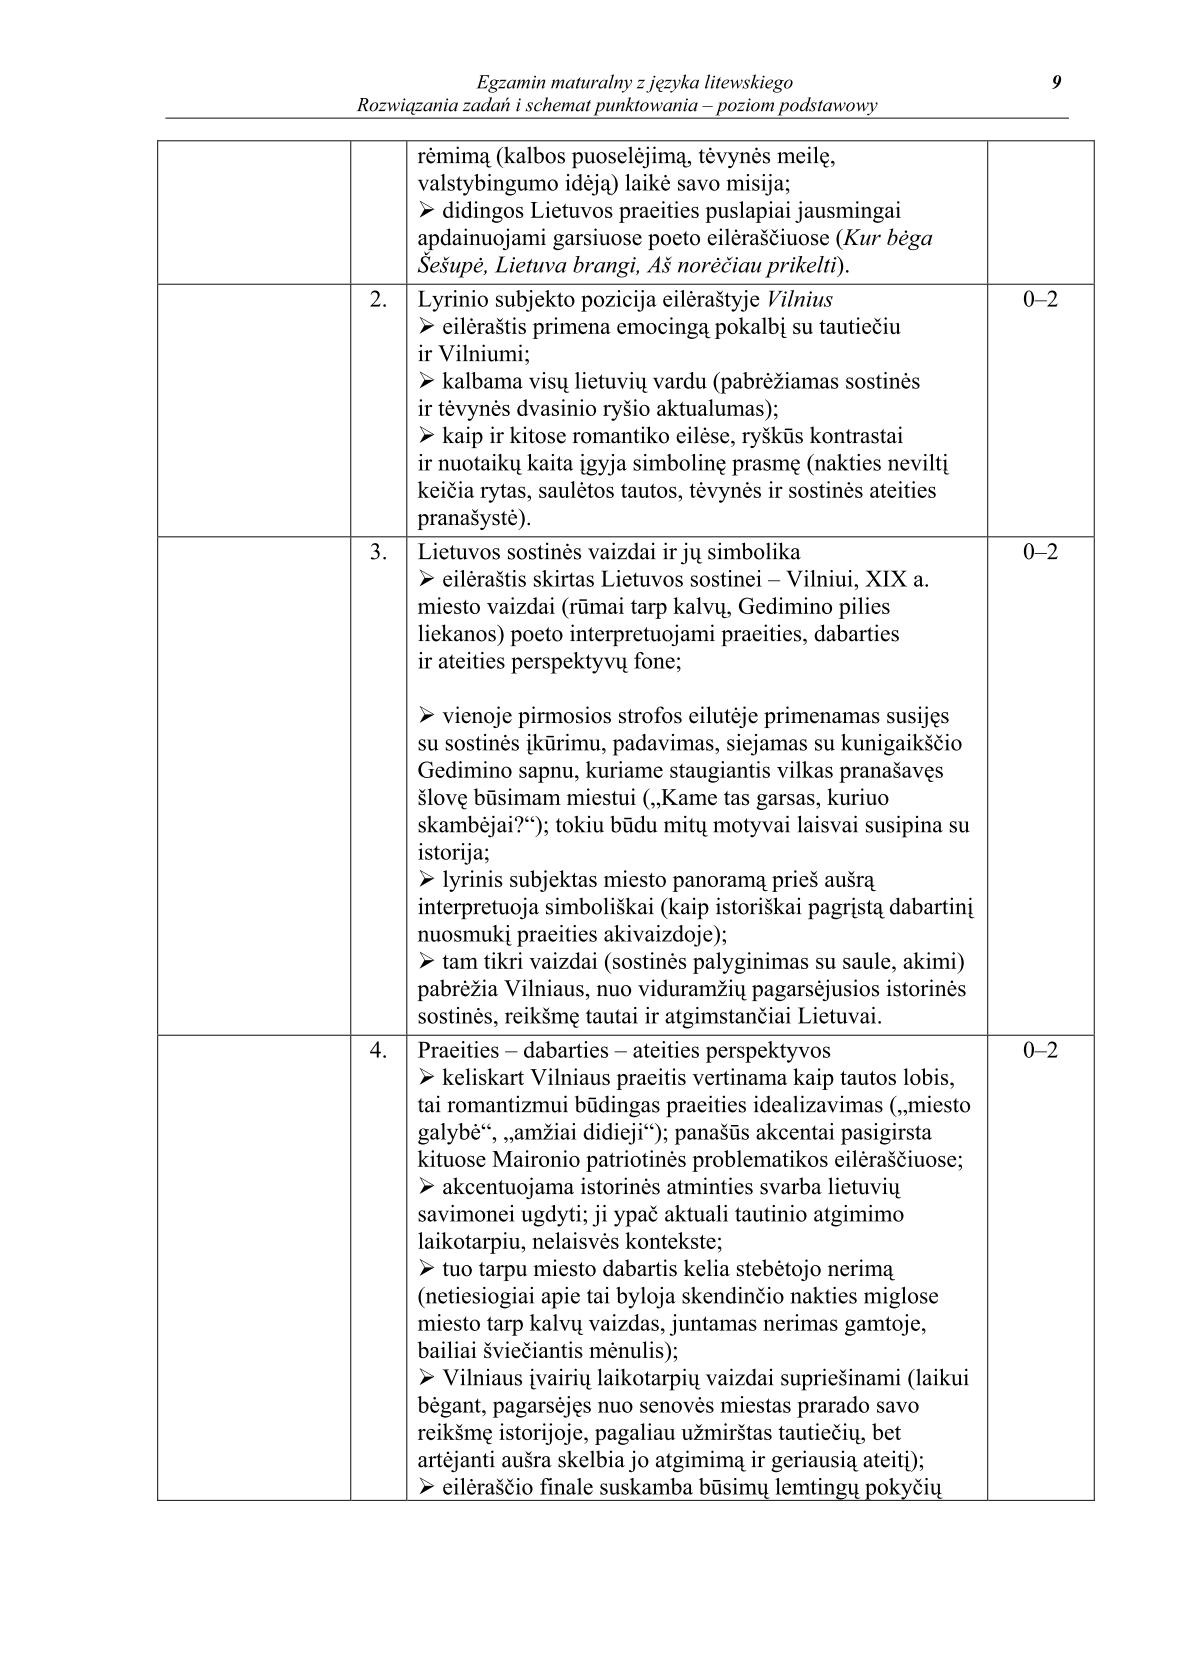 odpowiedzi-jezyk-litewski-poziom-podstawowy-matura-2014-str.9